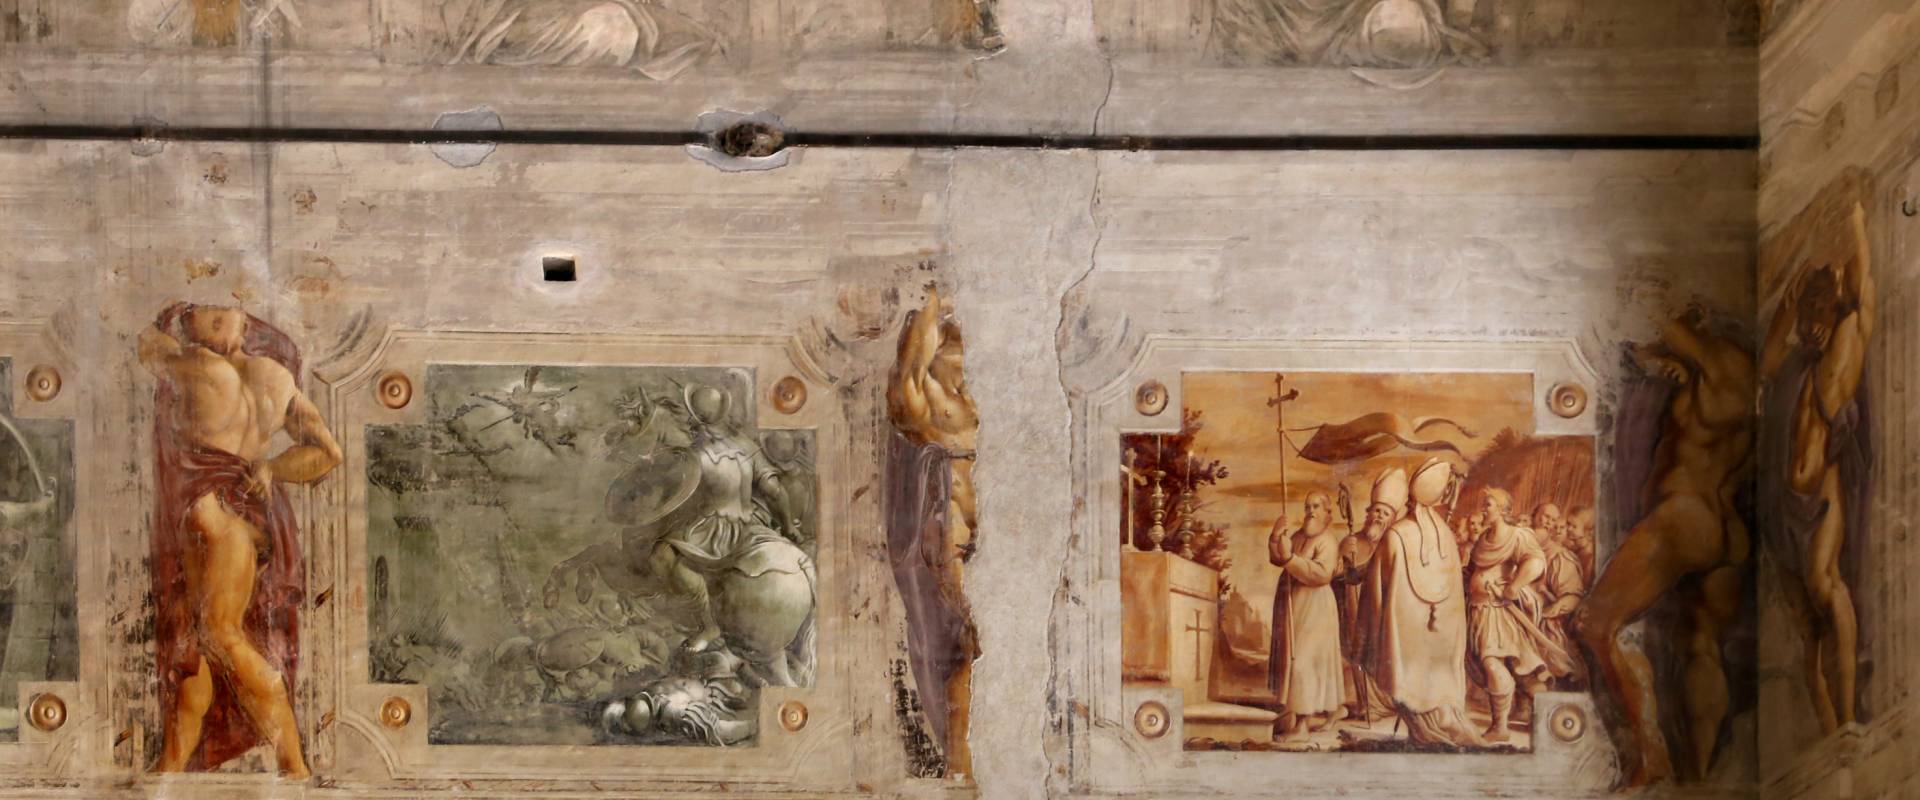 Pier francesco battistelli e aiuti, affreschi con scene dell'orlando furioso e della gerusalemme l. tra telamoni, 1619-28, 14 foto di Sailko